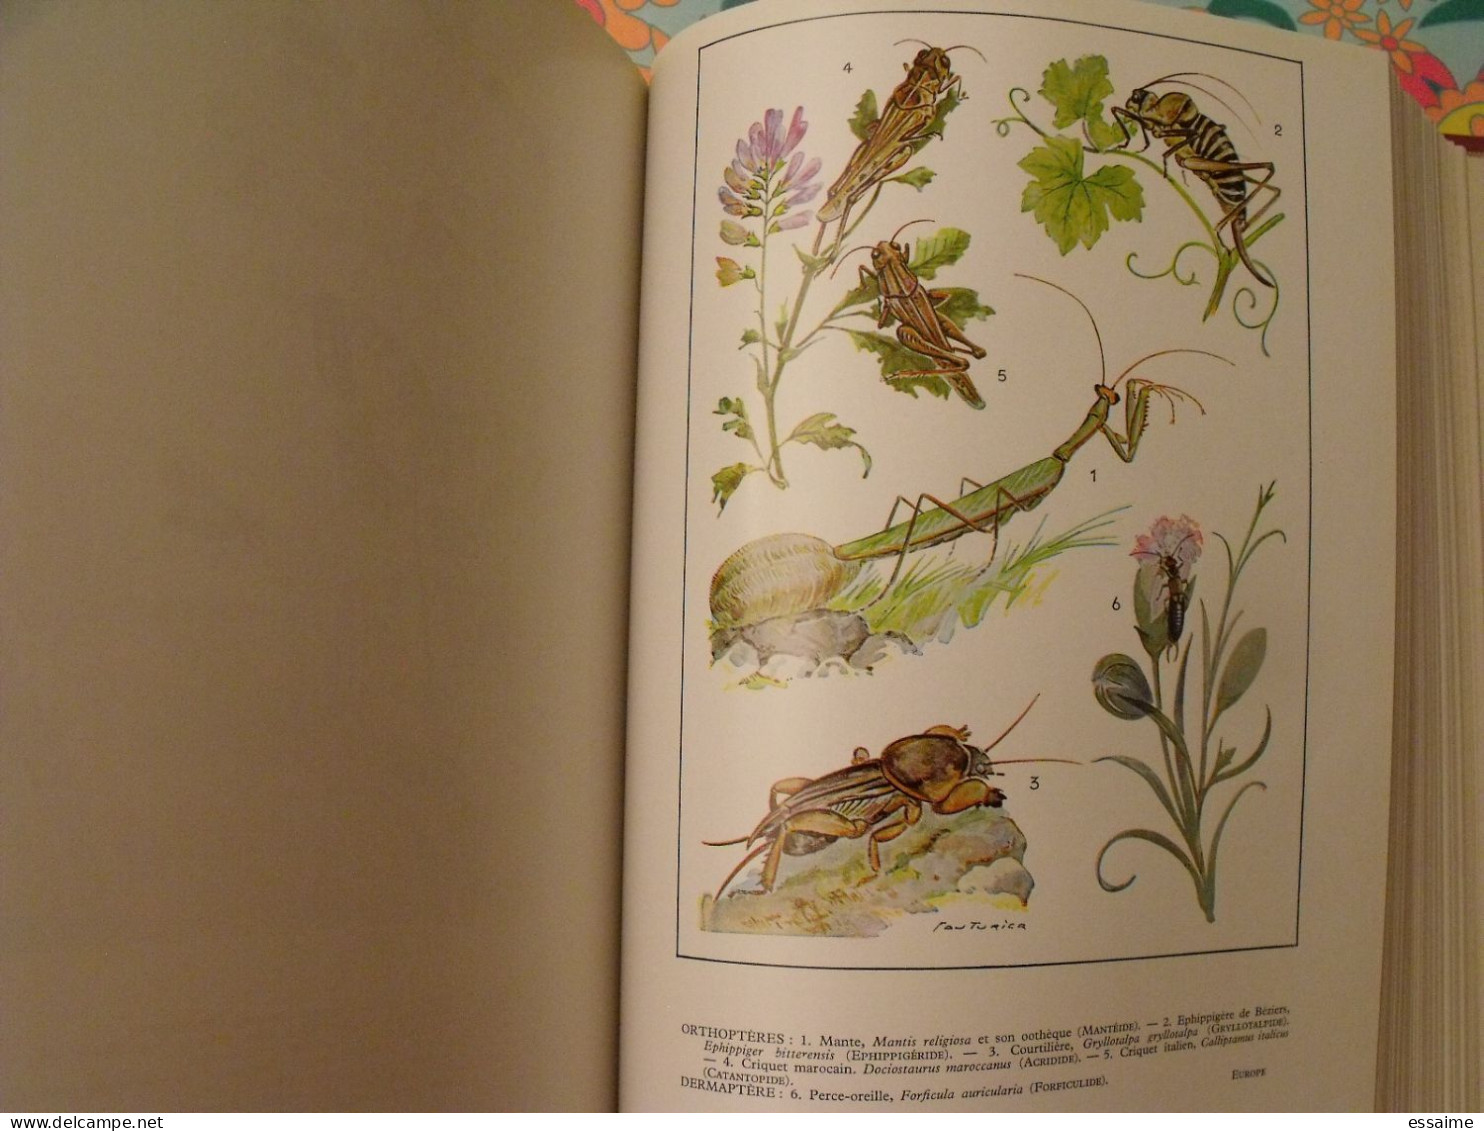 encyclopédie Clartés. Etres vivants. végétaux et animaux. 1976. très illustré